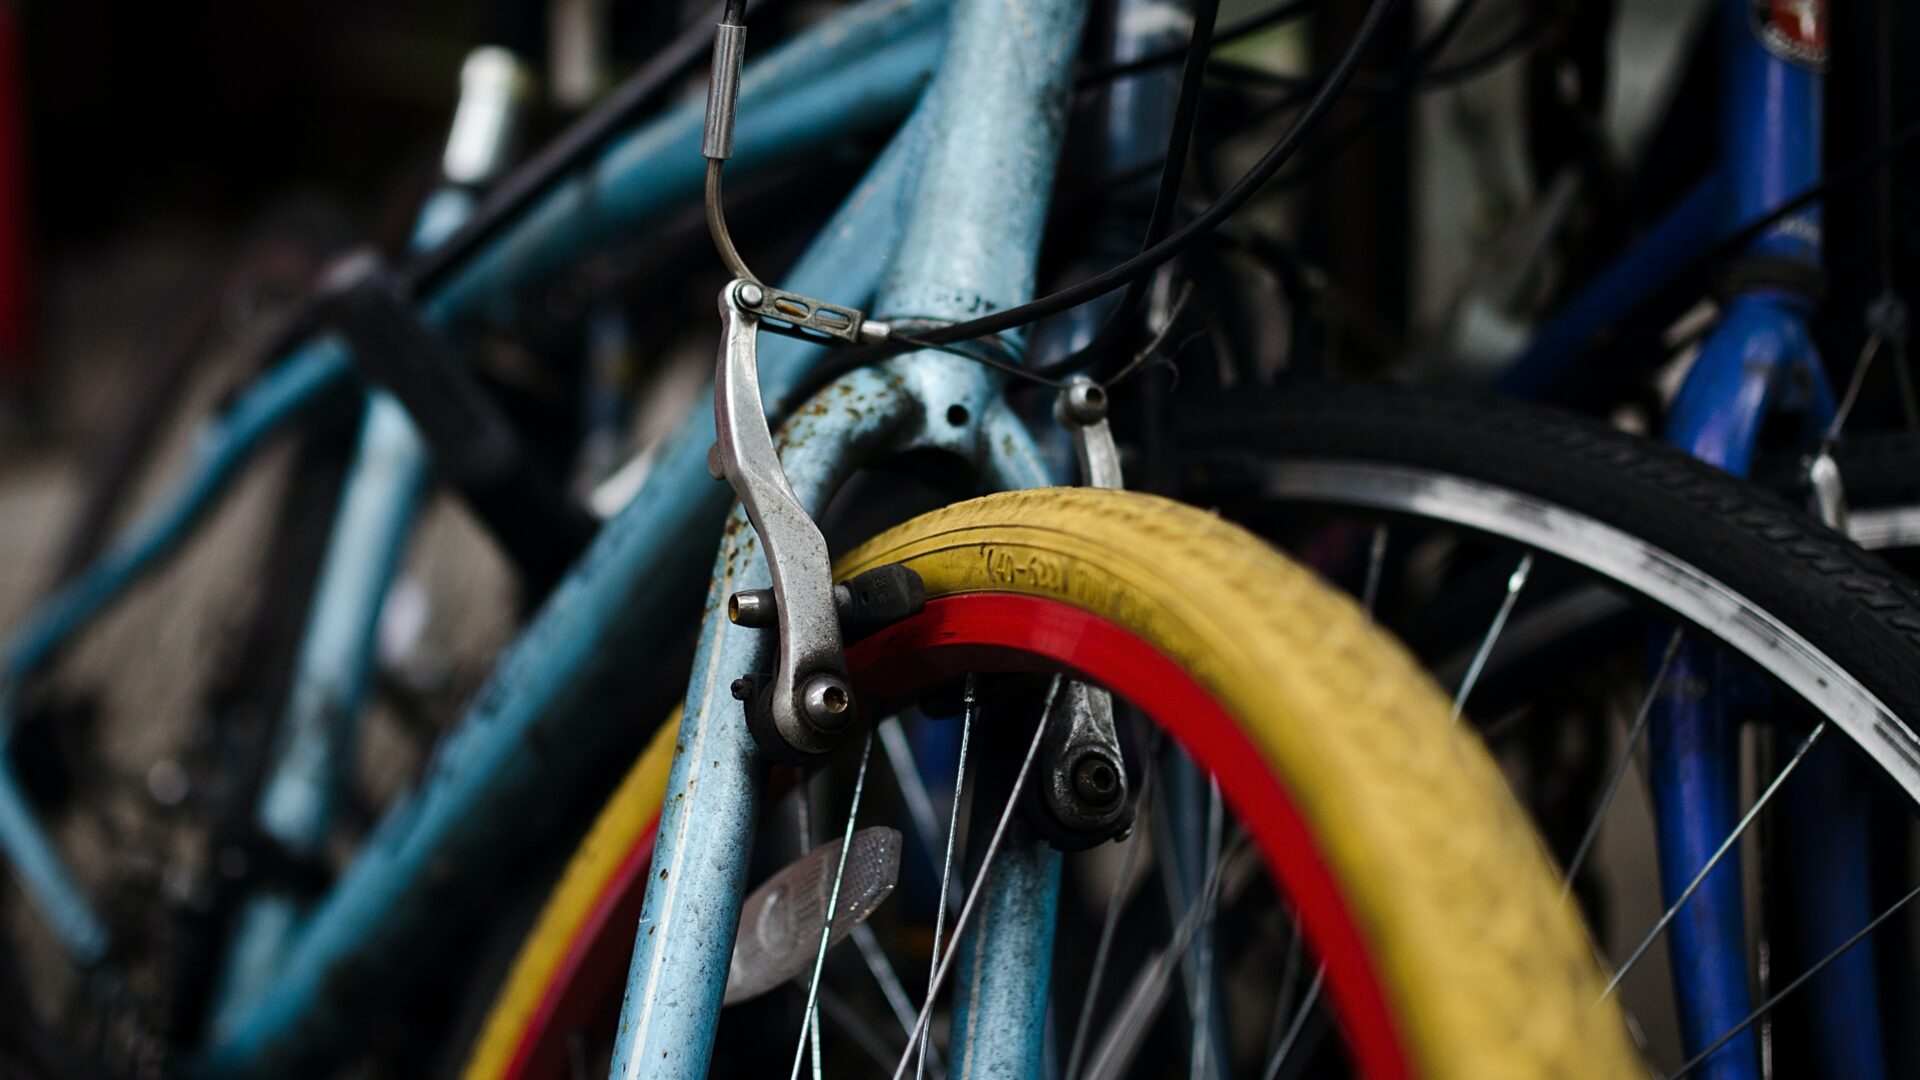 Mehrere, ältere Fahrräder lehnen aneinander.